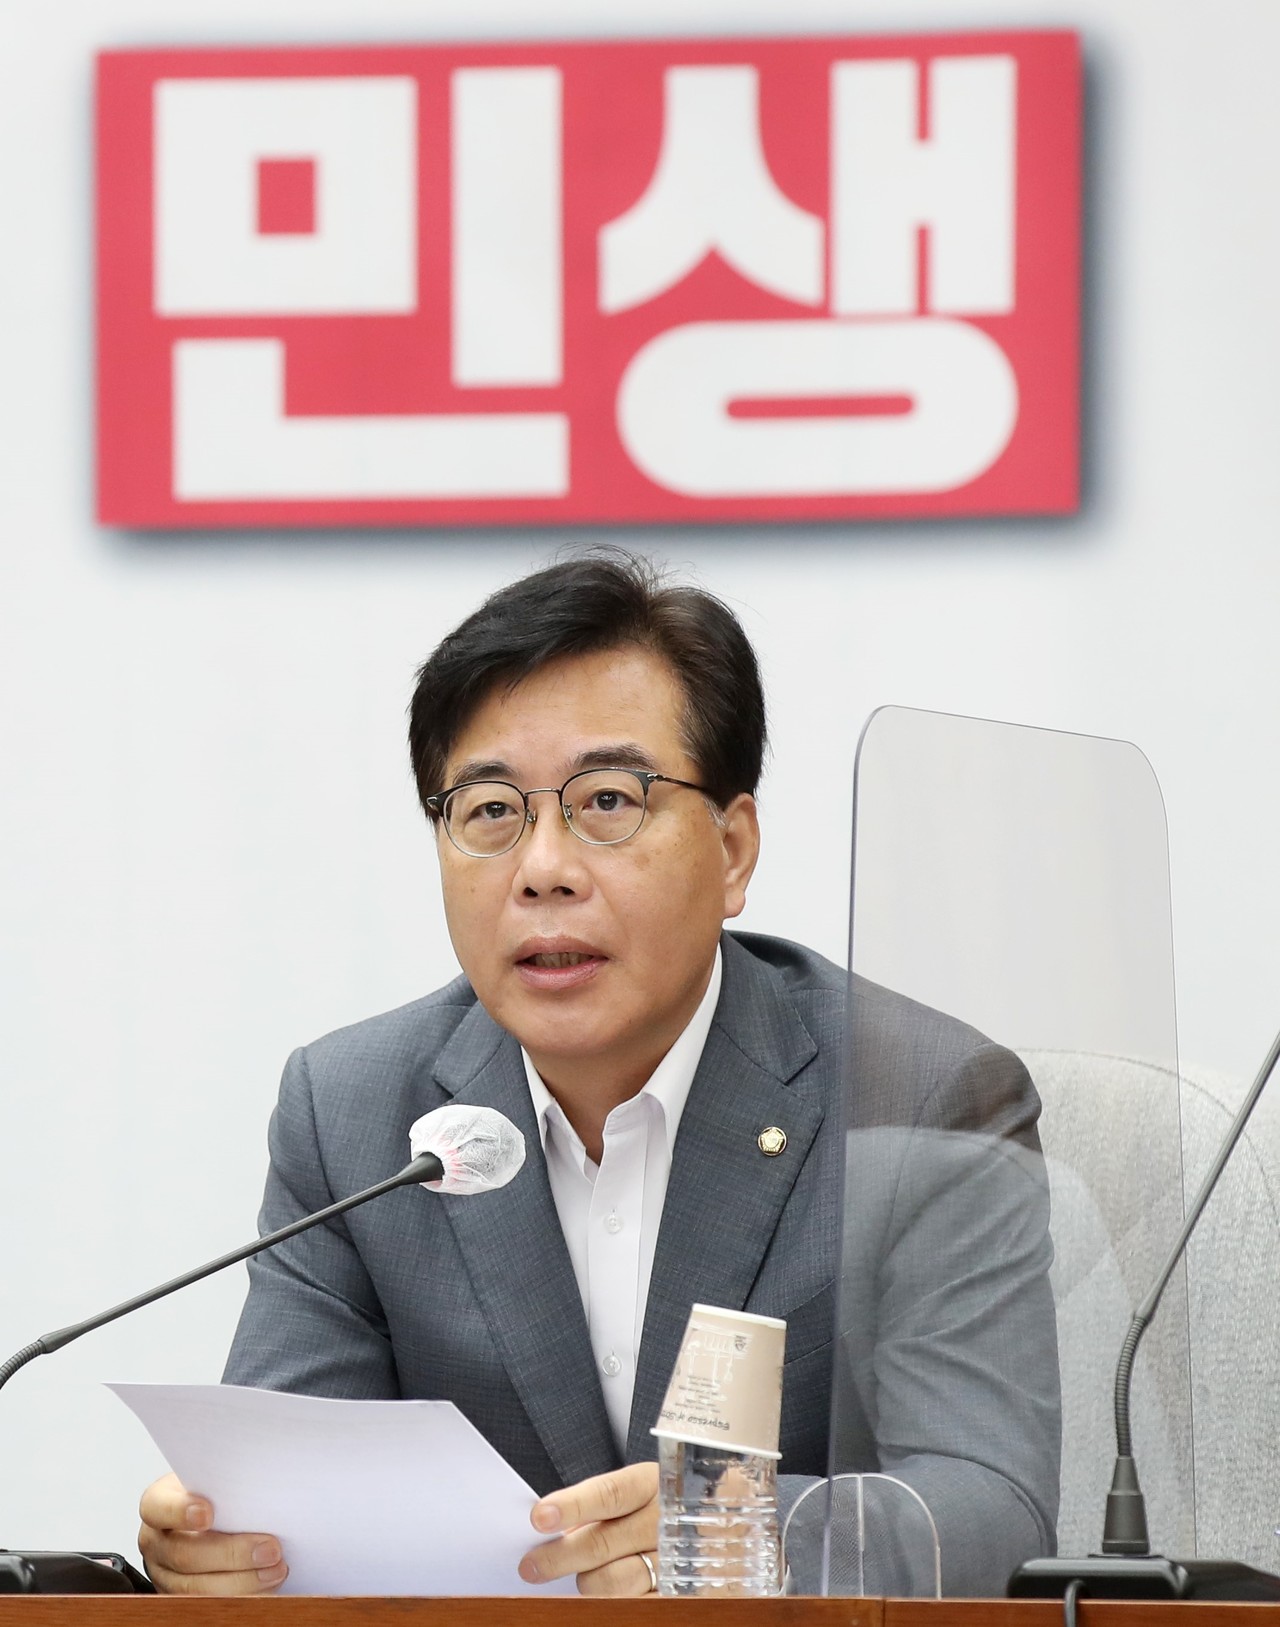 송언석 국회의원(경북 김천시. 재선)